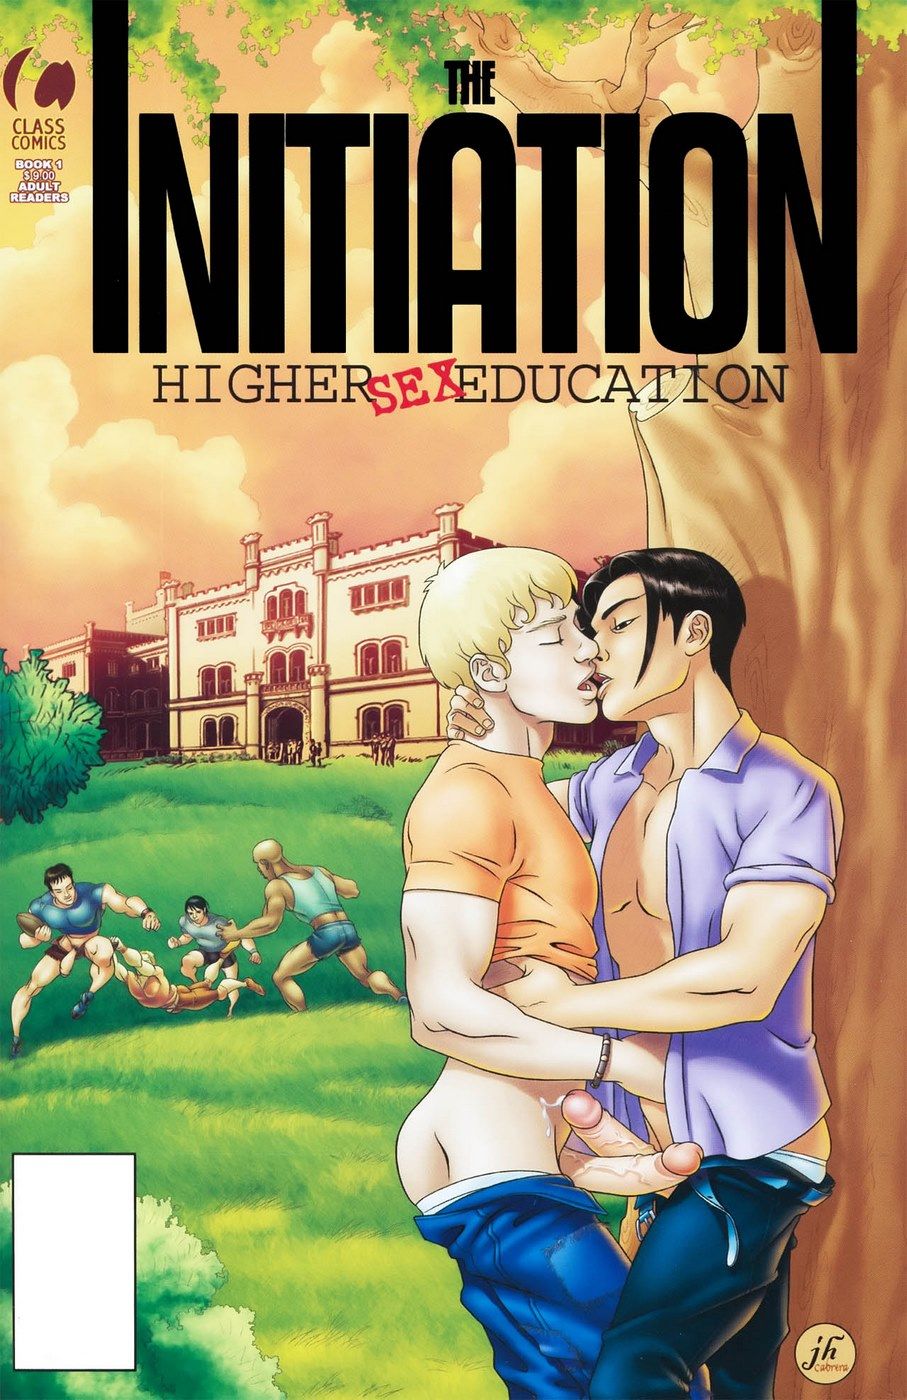 gay il Iniziazione superiore Sesso Istruzione page 1